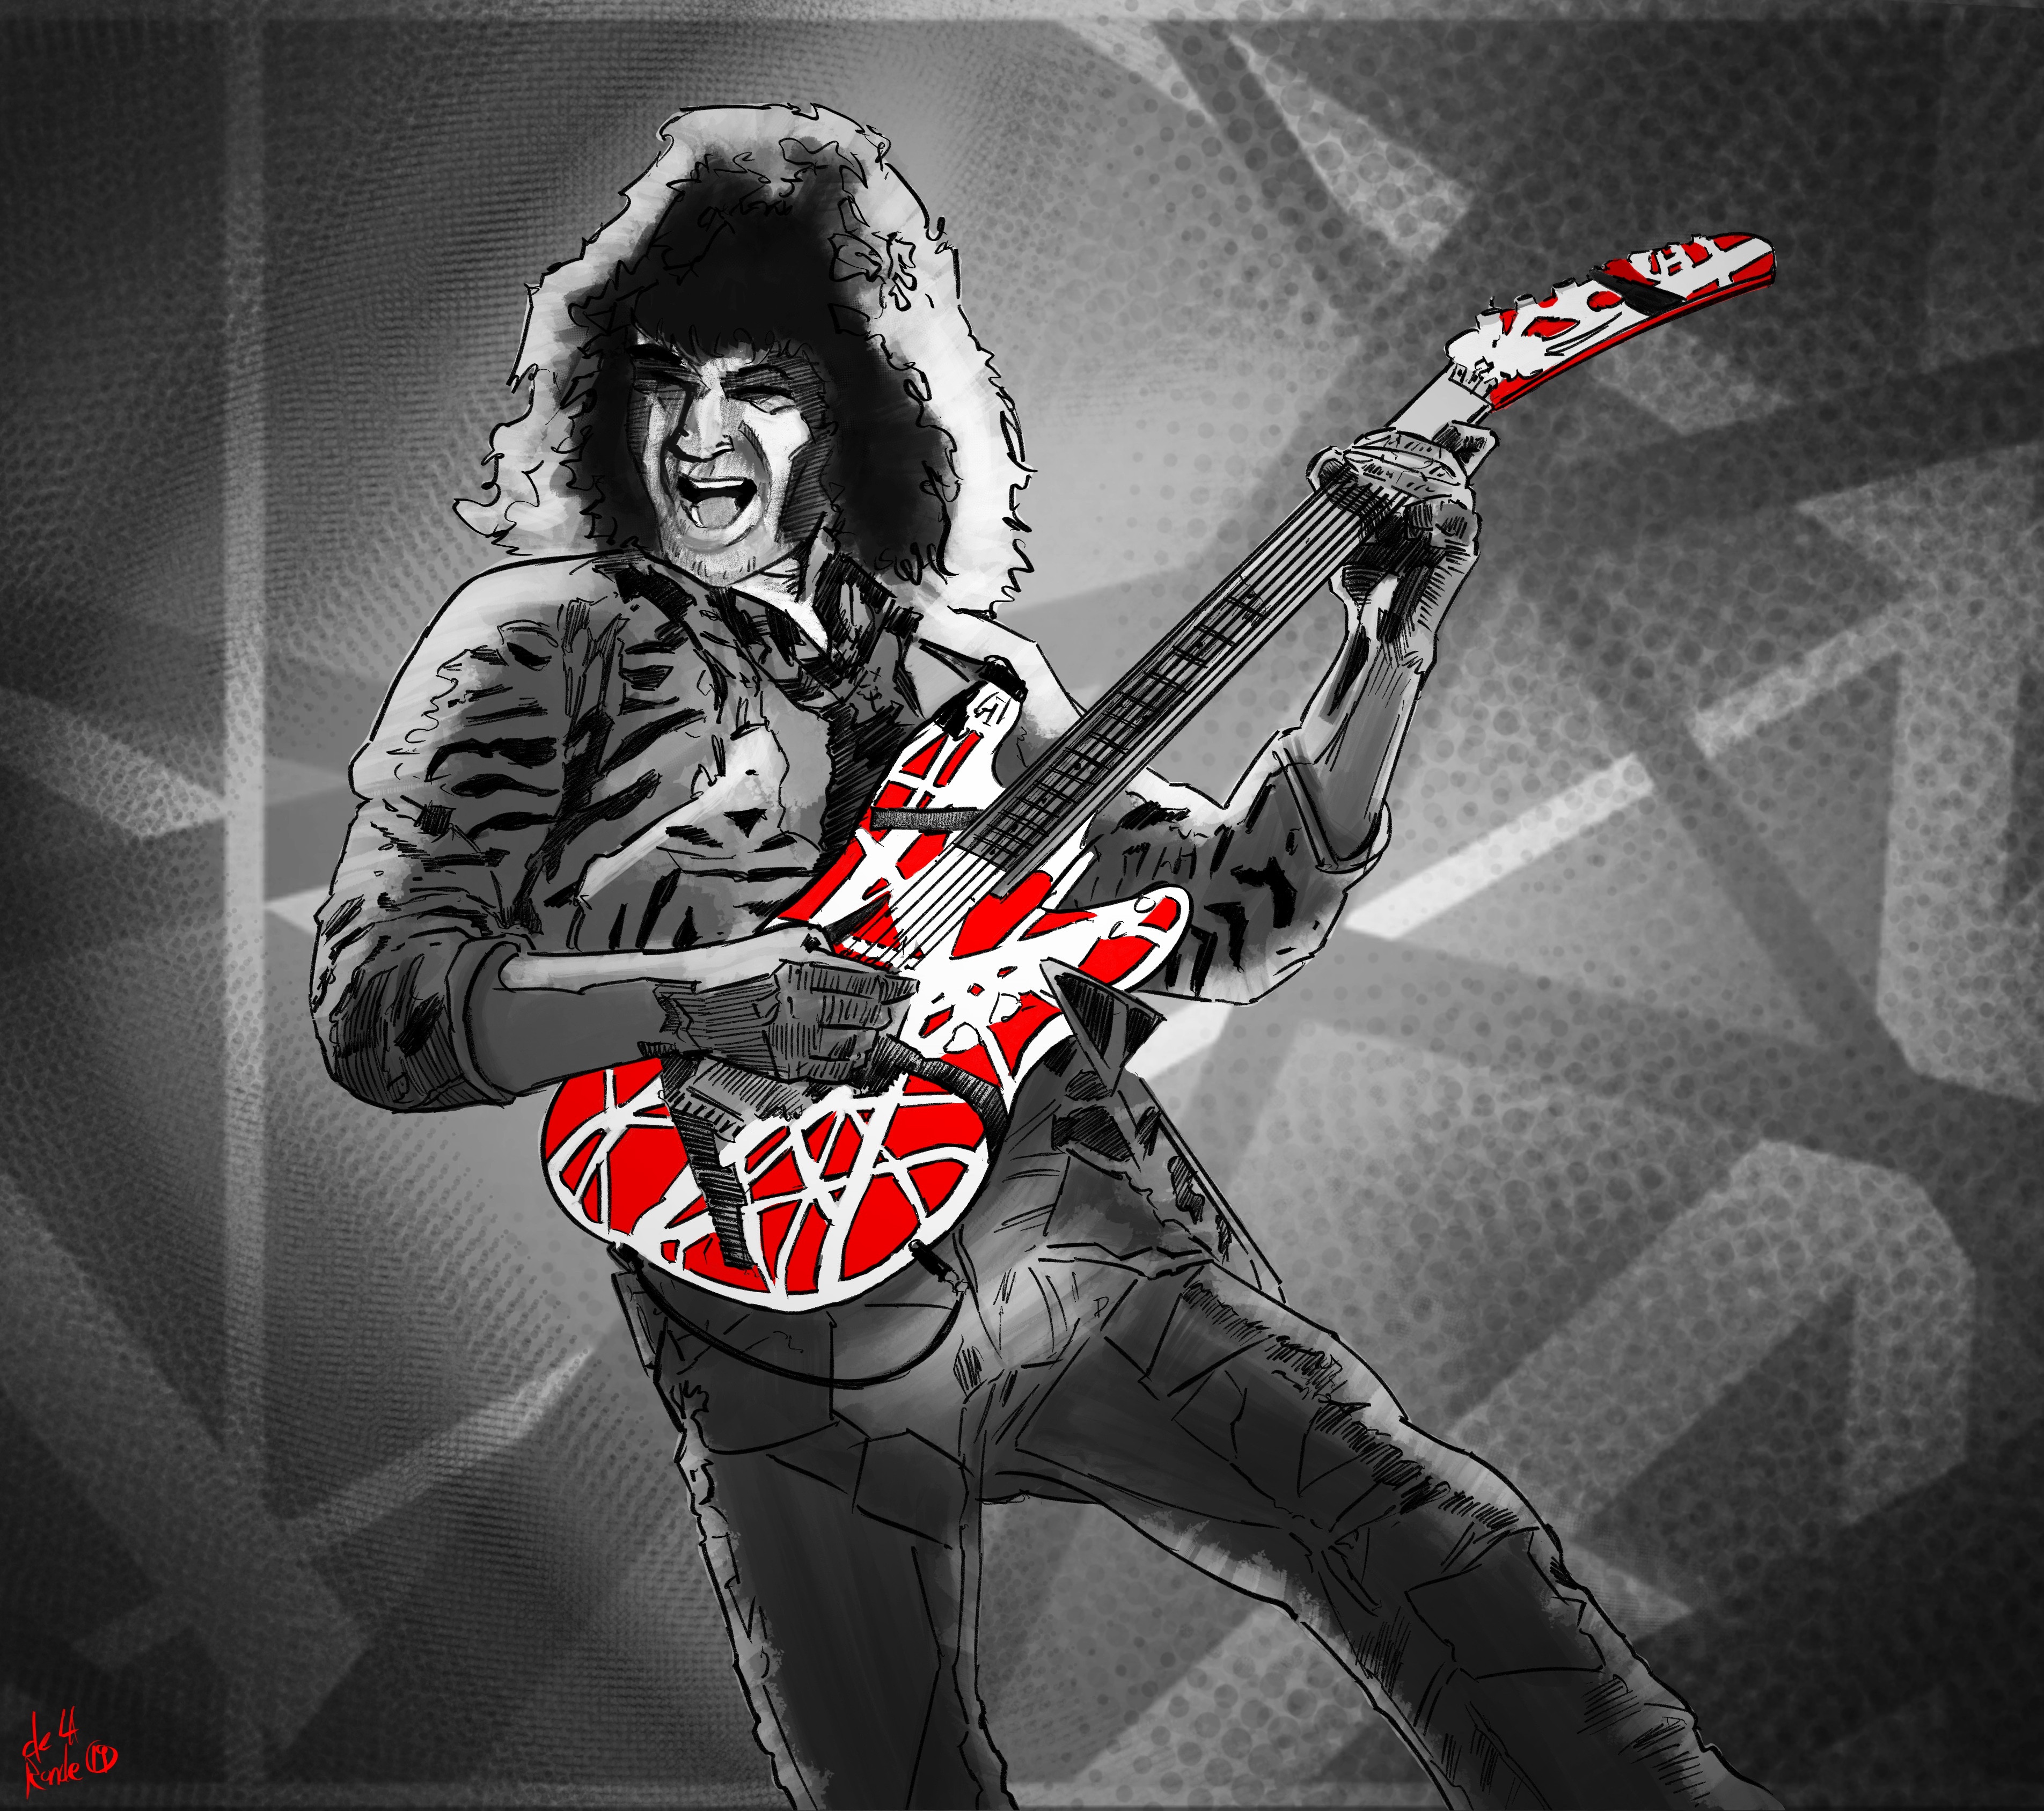 Edward Van Halen
Made in Procreate, on the Ipad Pro.
